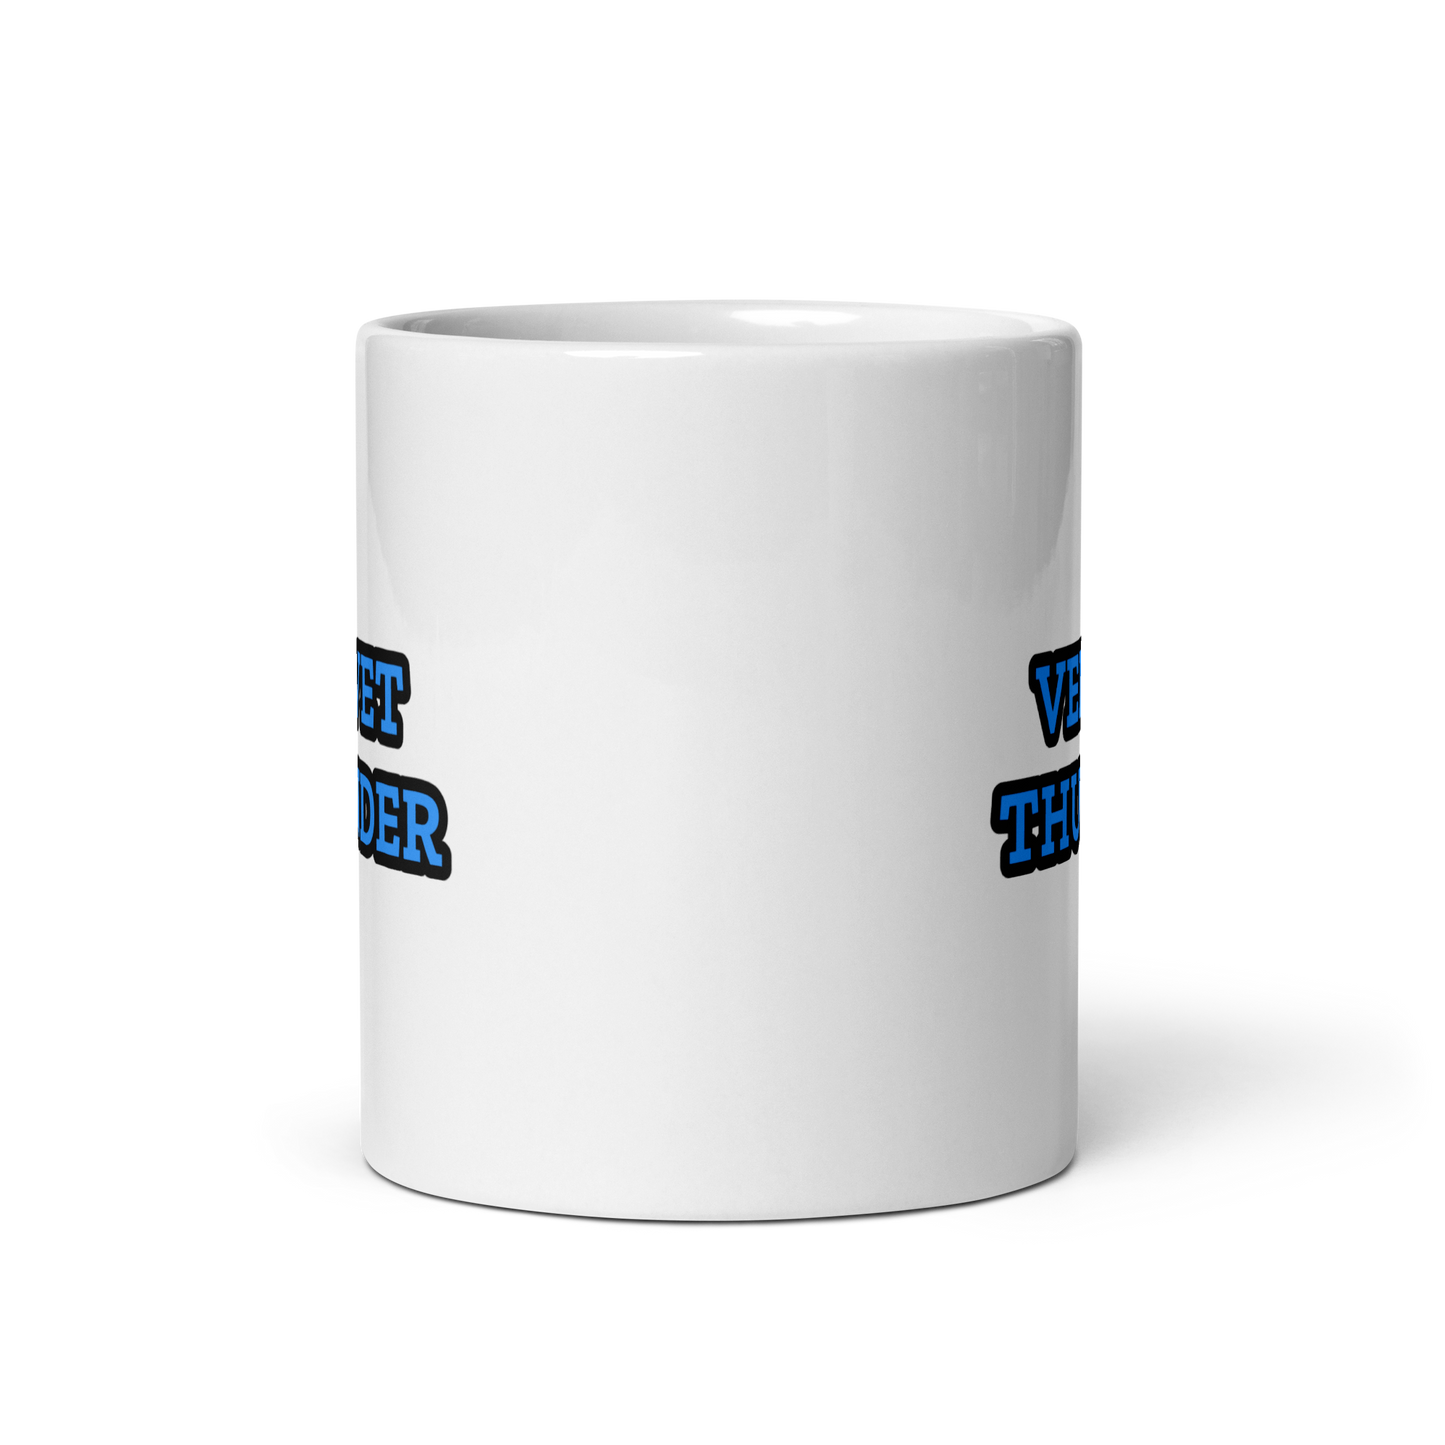 Velvet Thunder White glossy mug